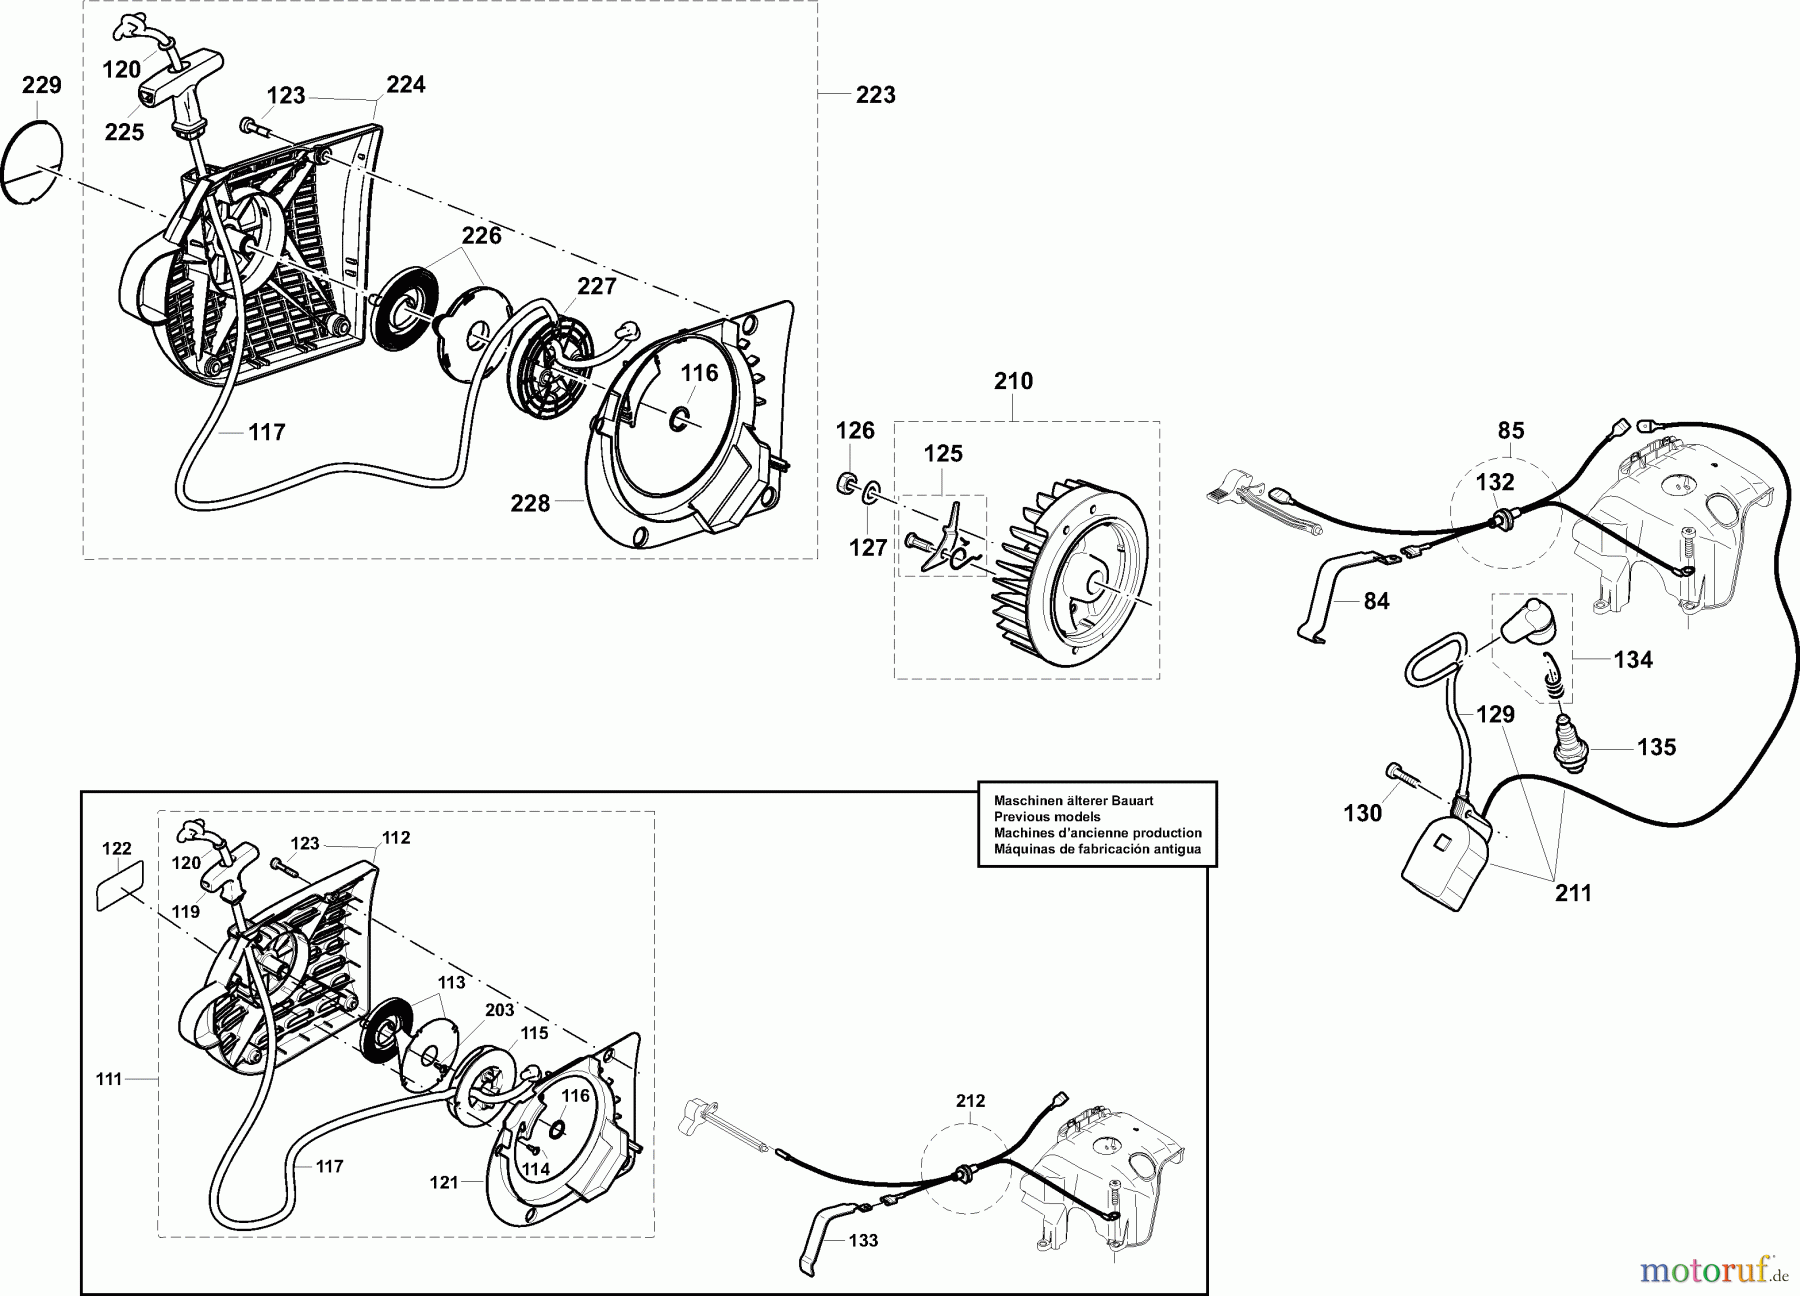  Dolmar Trennschleifer Benzin PC-7430 (USA) 5  Anwerfvorrichtung, Magnetzünder